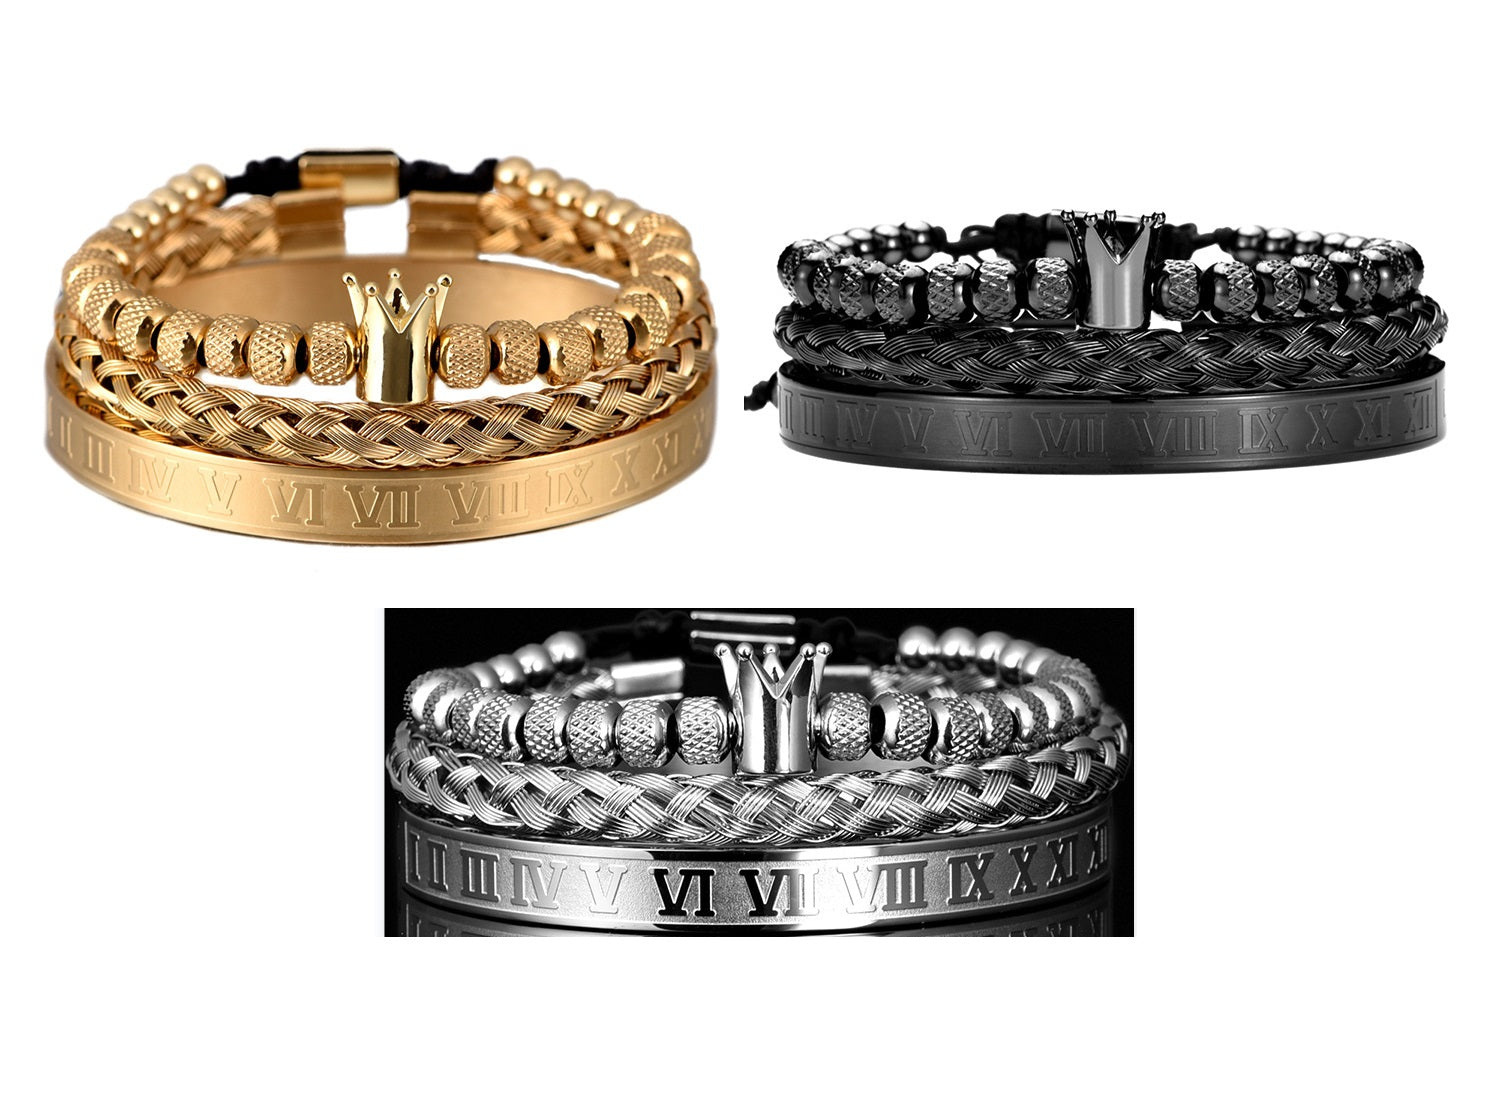 Luxury Roman Royal Crown Charm Stainless Steel Geometry Bracelet